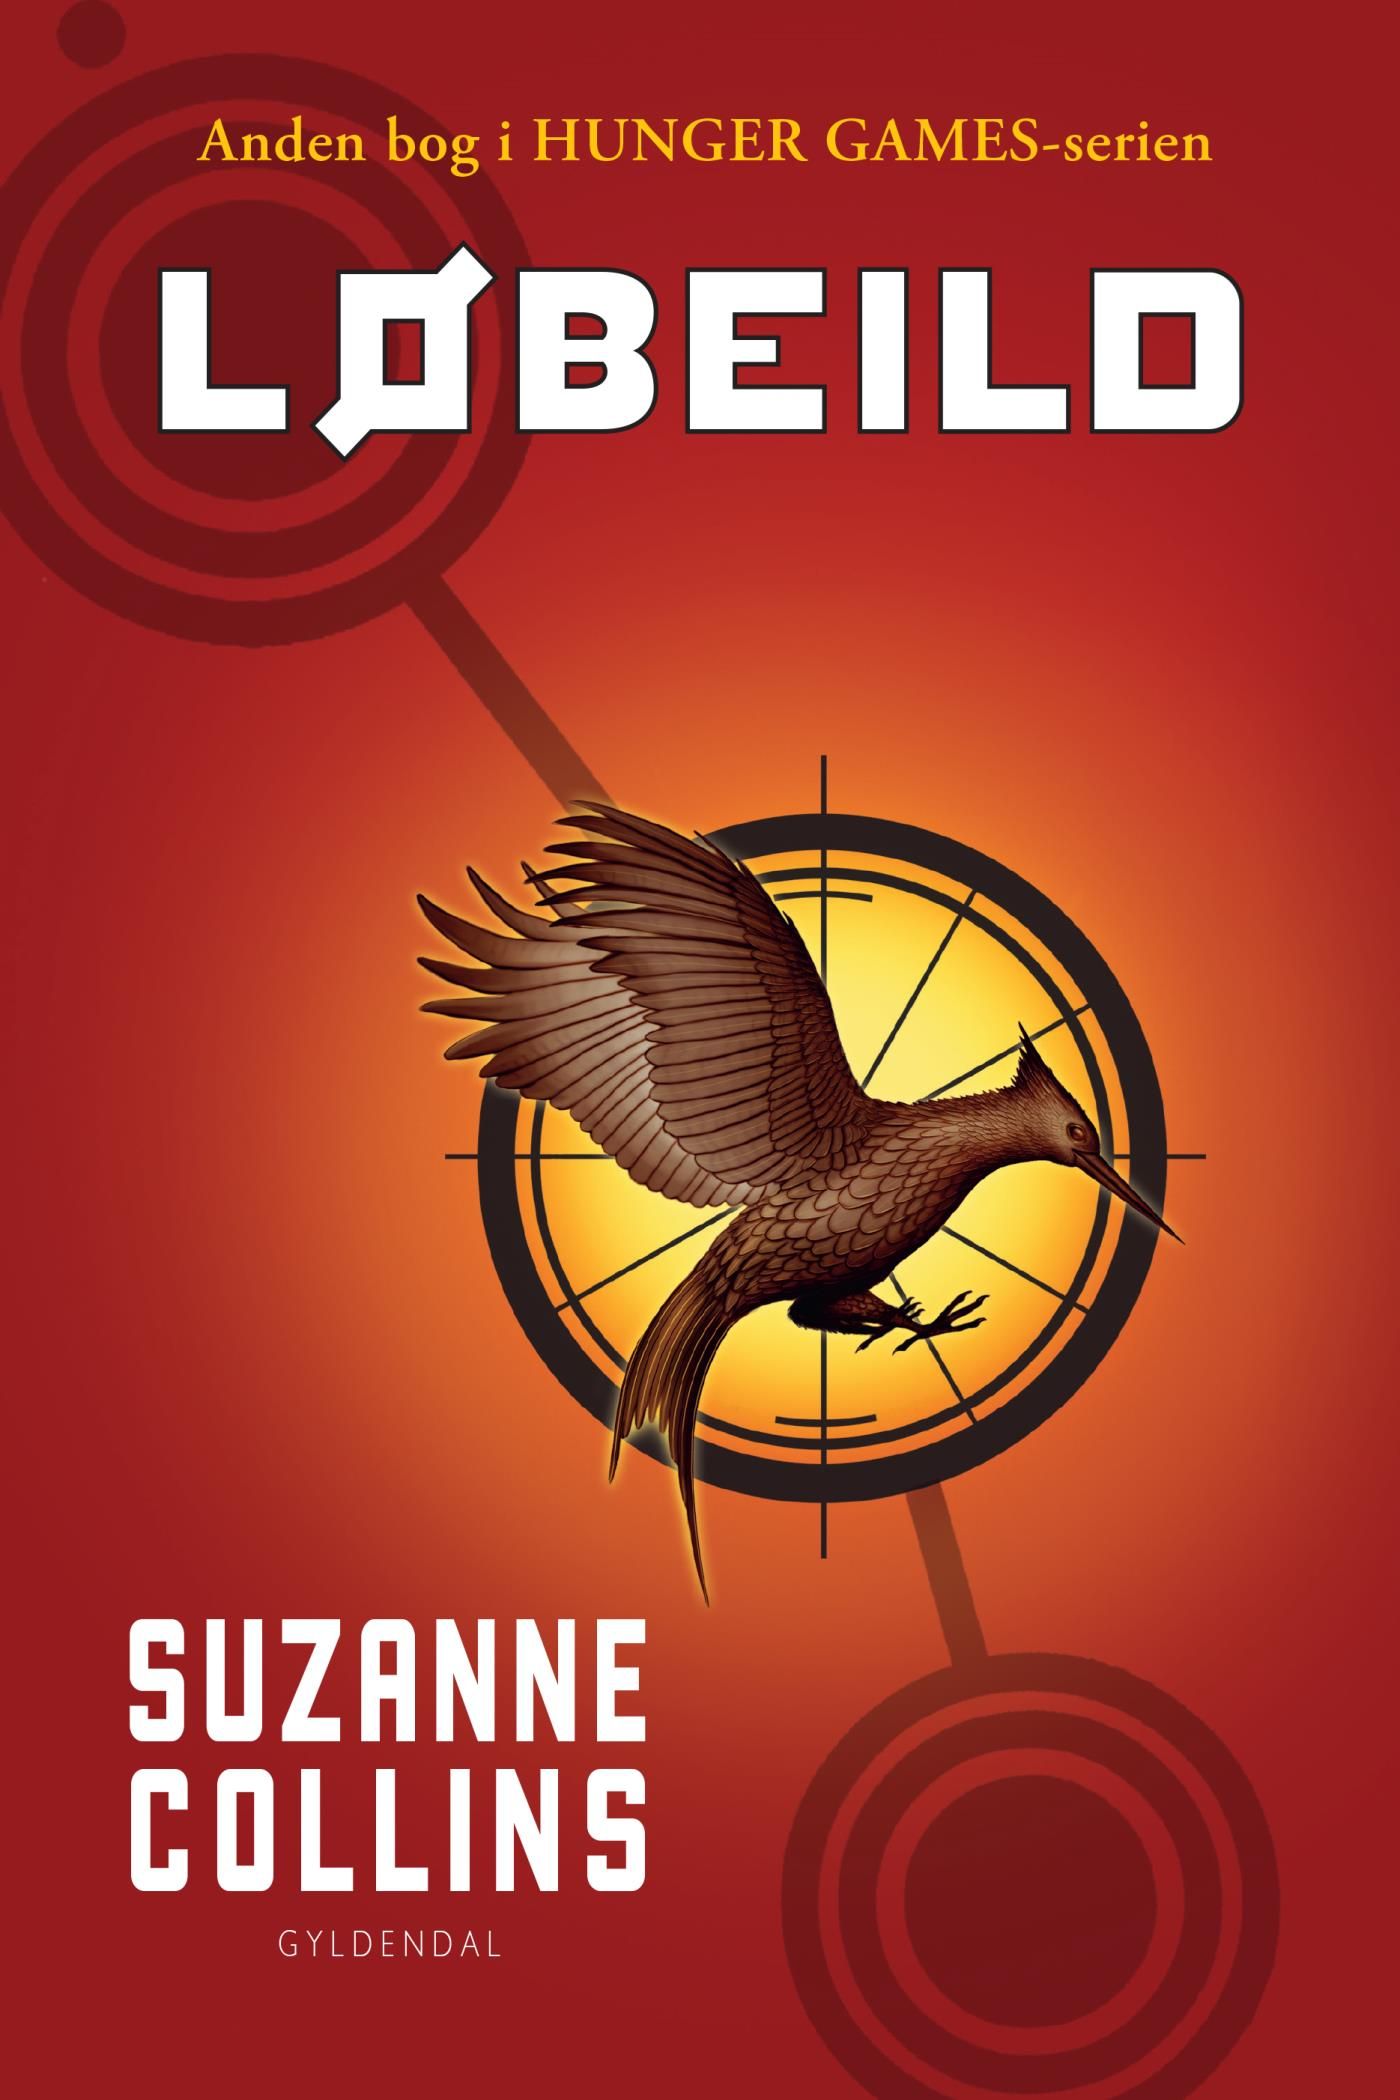 The Hunger Games 2 - Løbeild, e-bok av Suzanne Collins